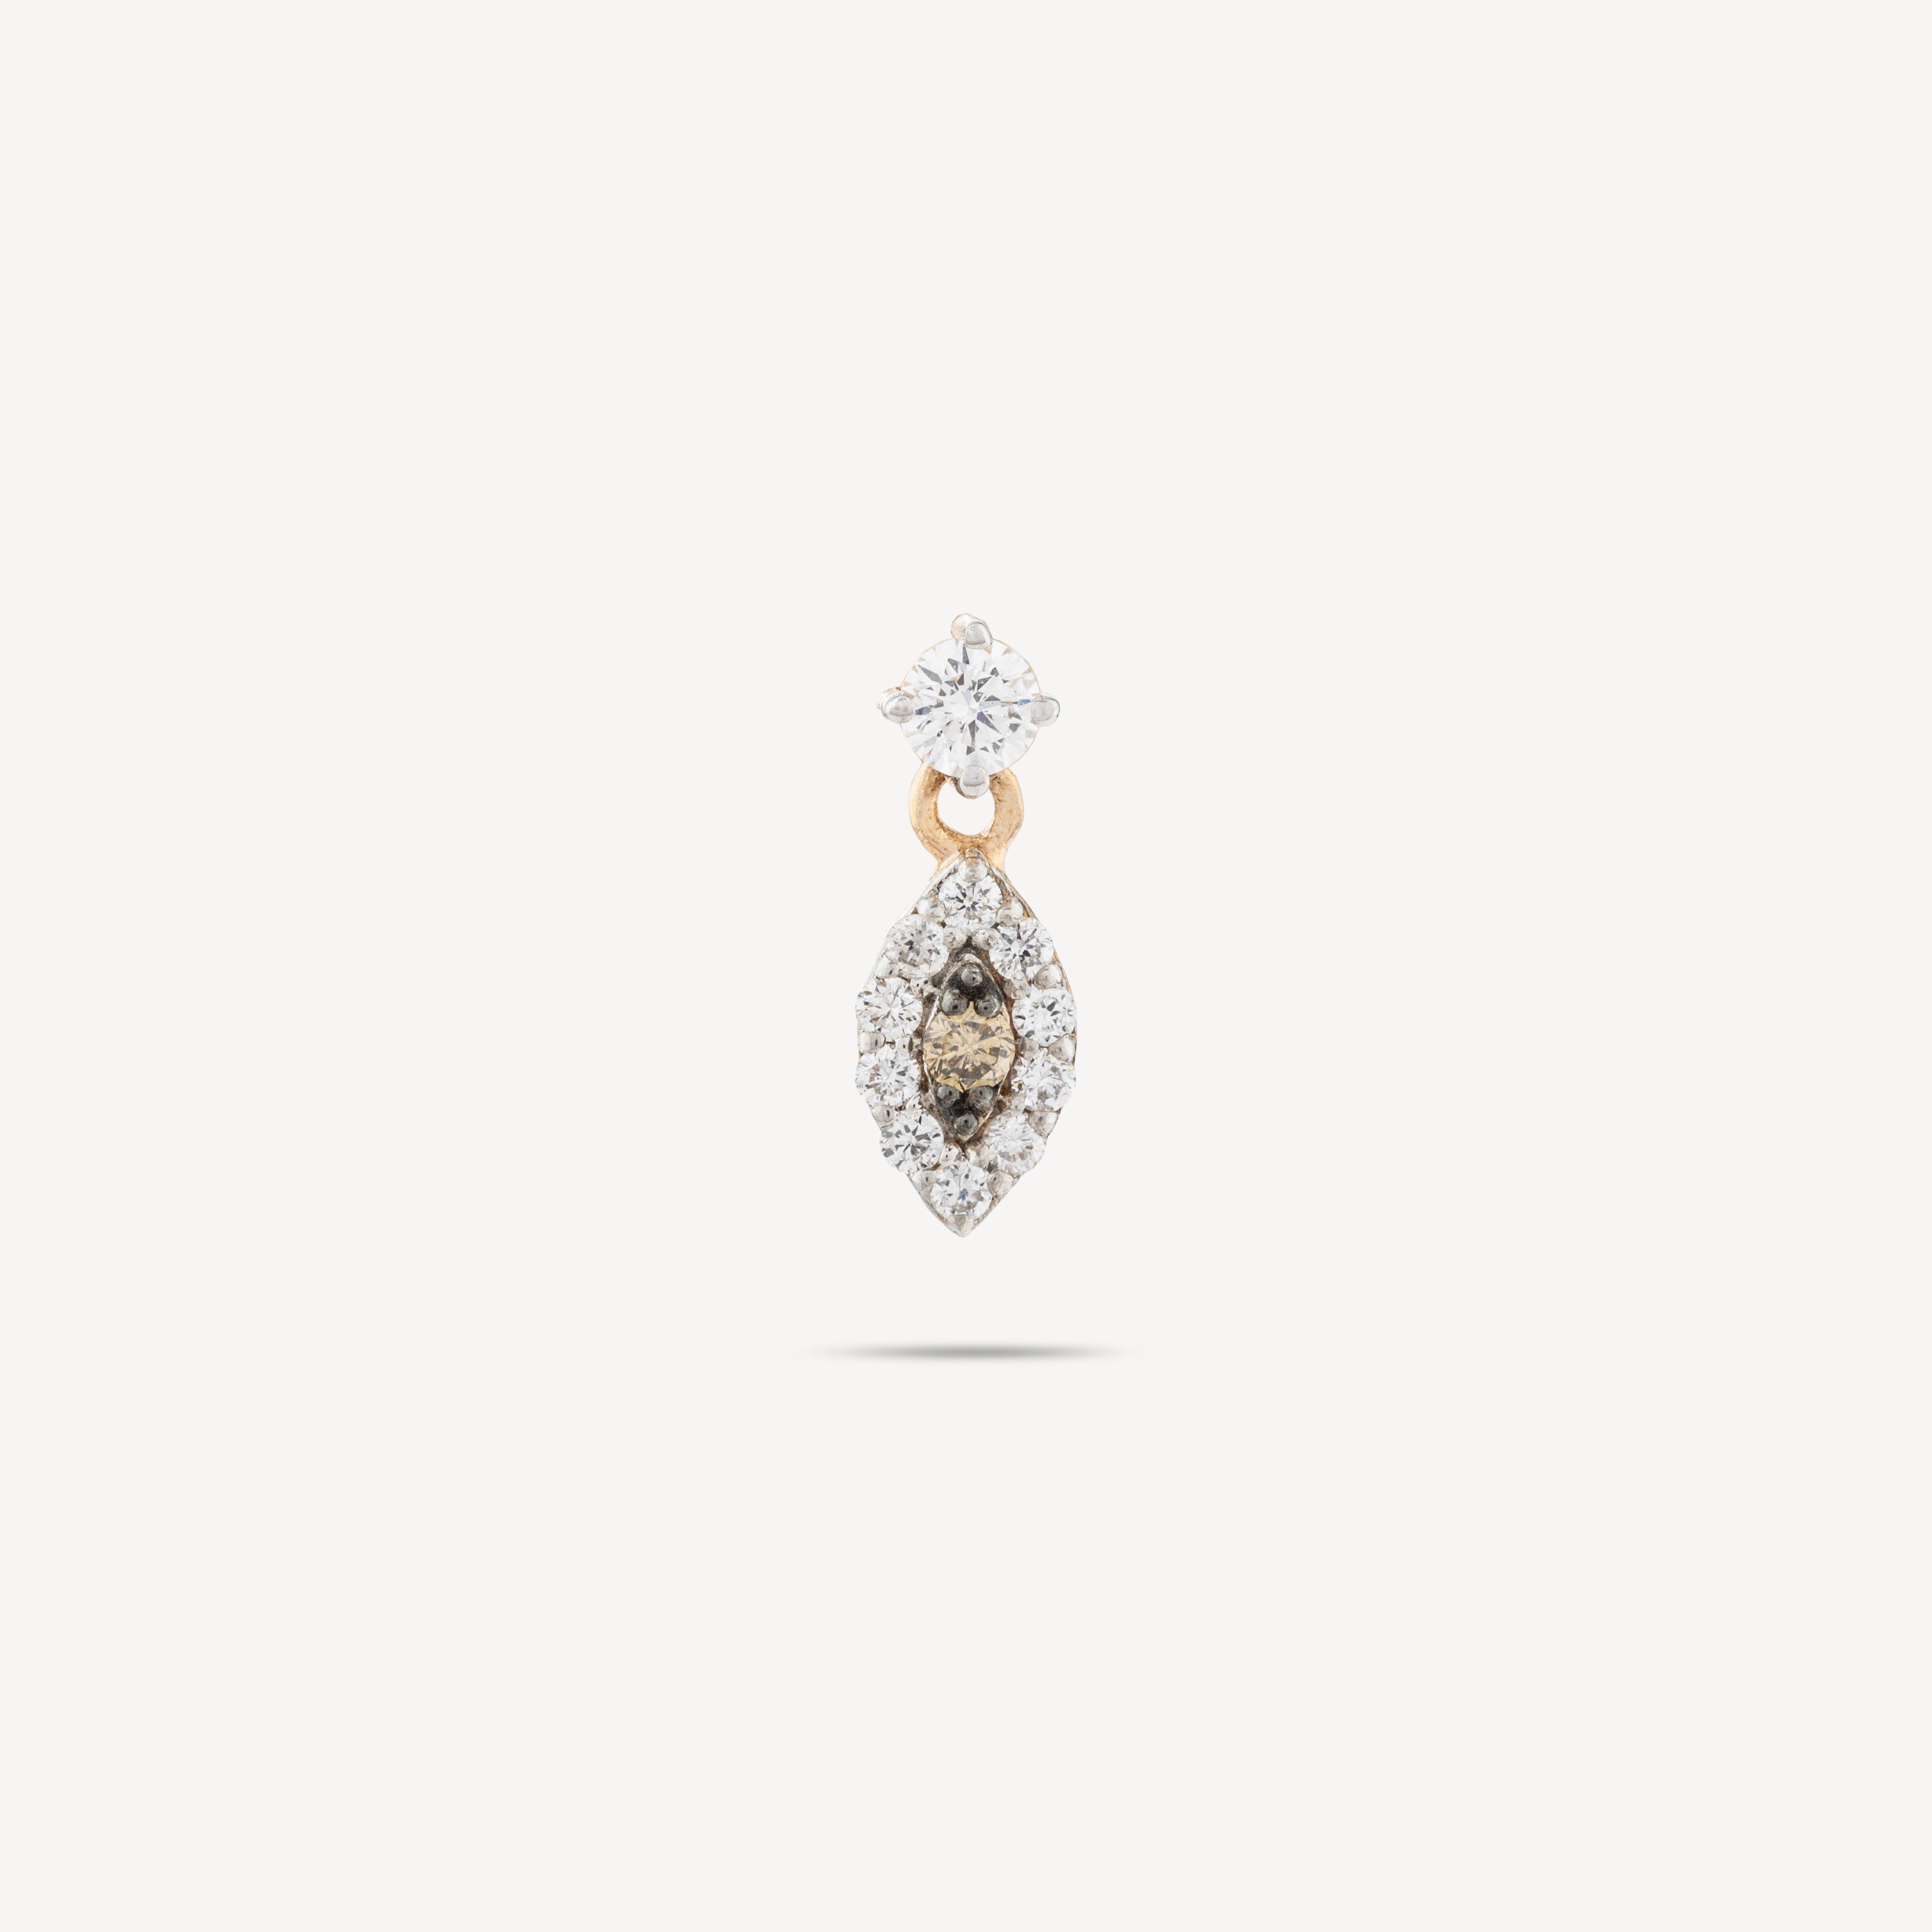 Piercing-Auge, 8 mm, baumelnd, Diamanten, Roségold